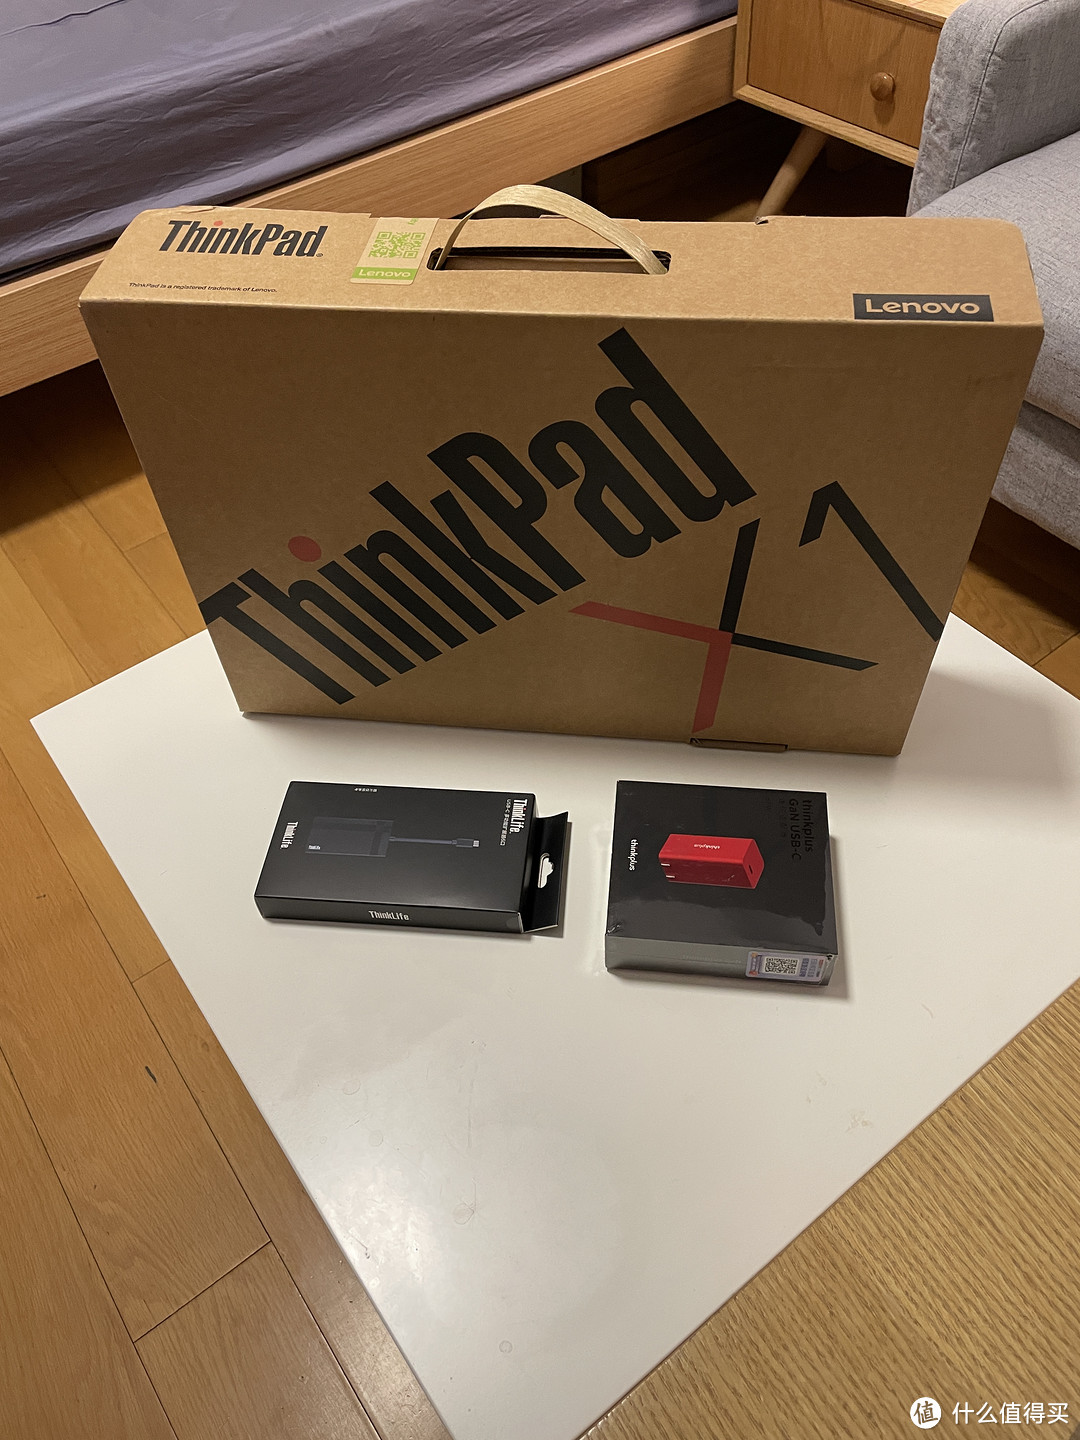 2023新版Thinkpad X1 nano开箱及血的教训